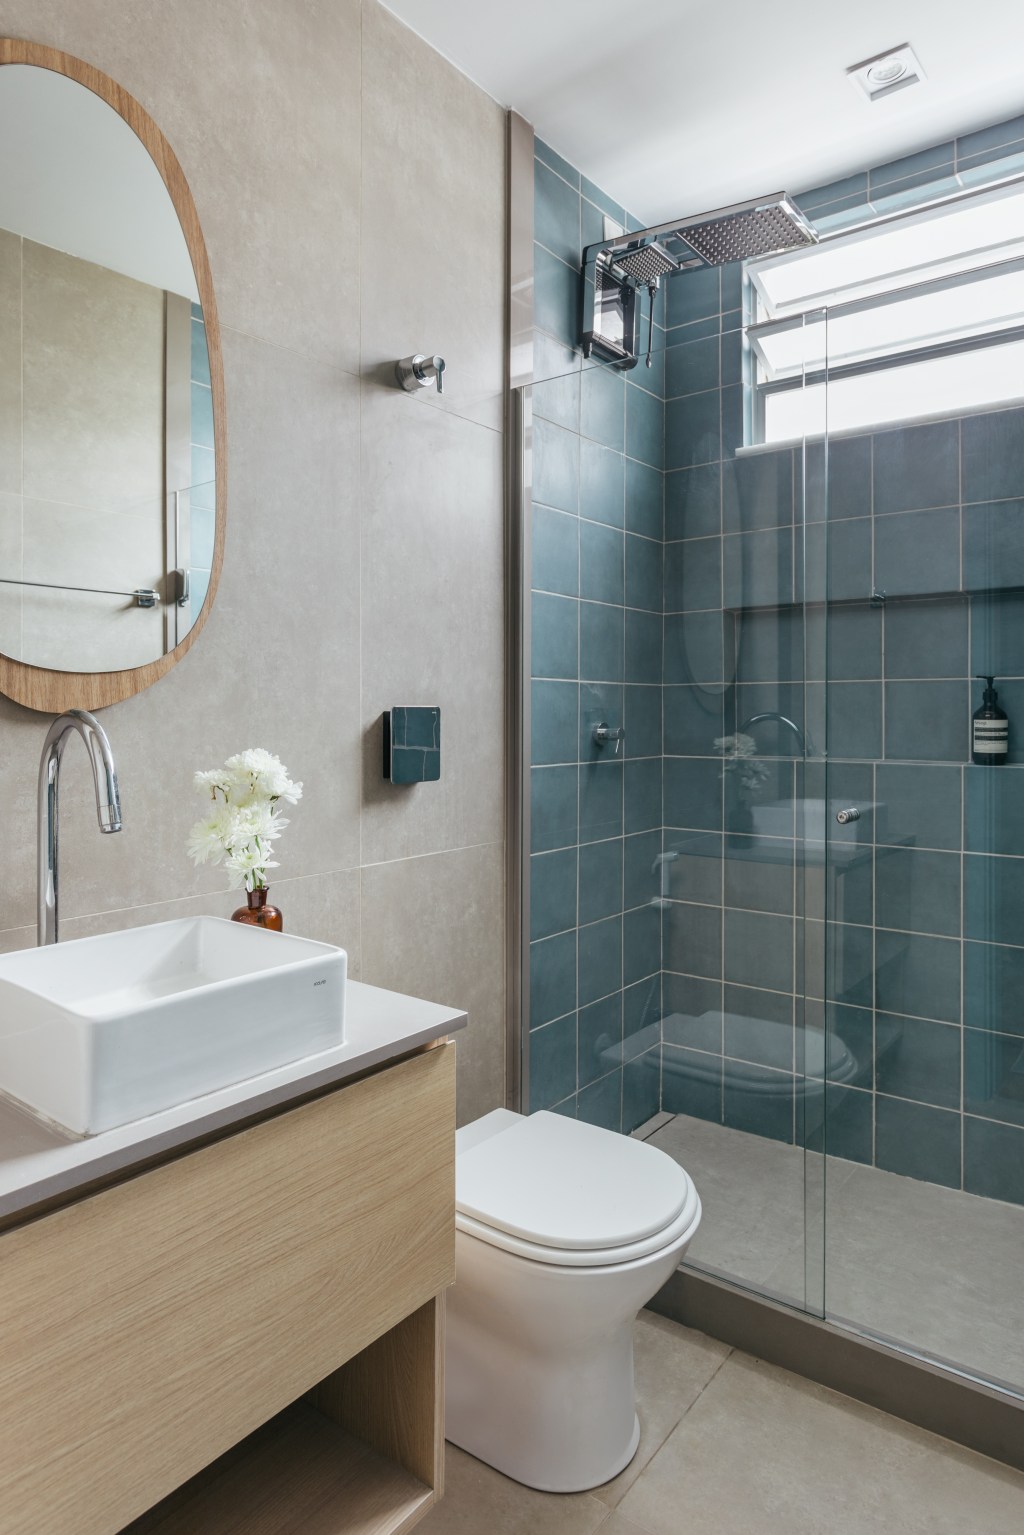 Apê de 25 m² ganha décor praiana com parede de cerâmica azul. Projeto de Rodolfo Consoli. Na foto, banheiro com parede azul e espelho orgânico.